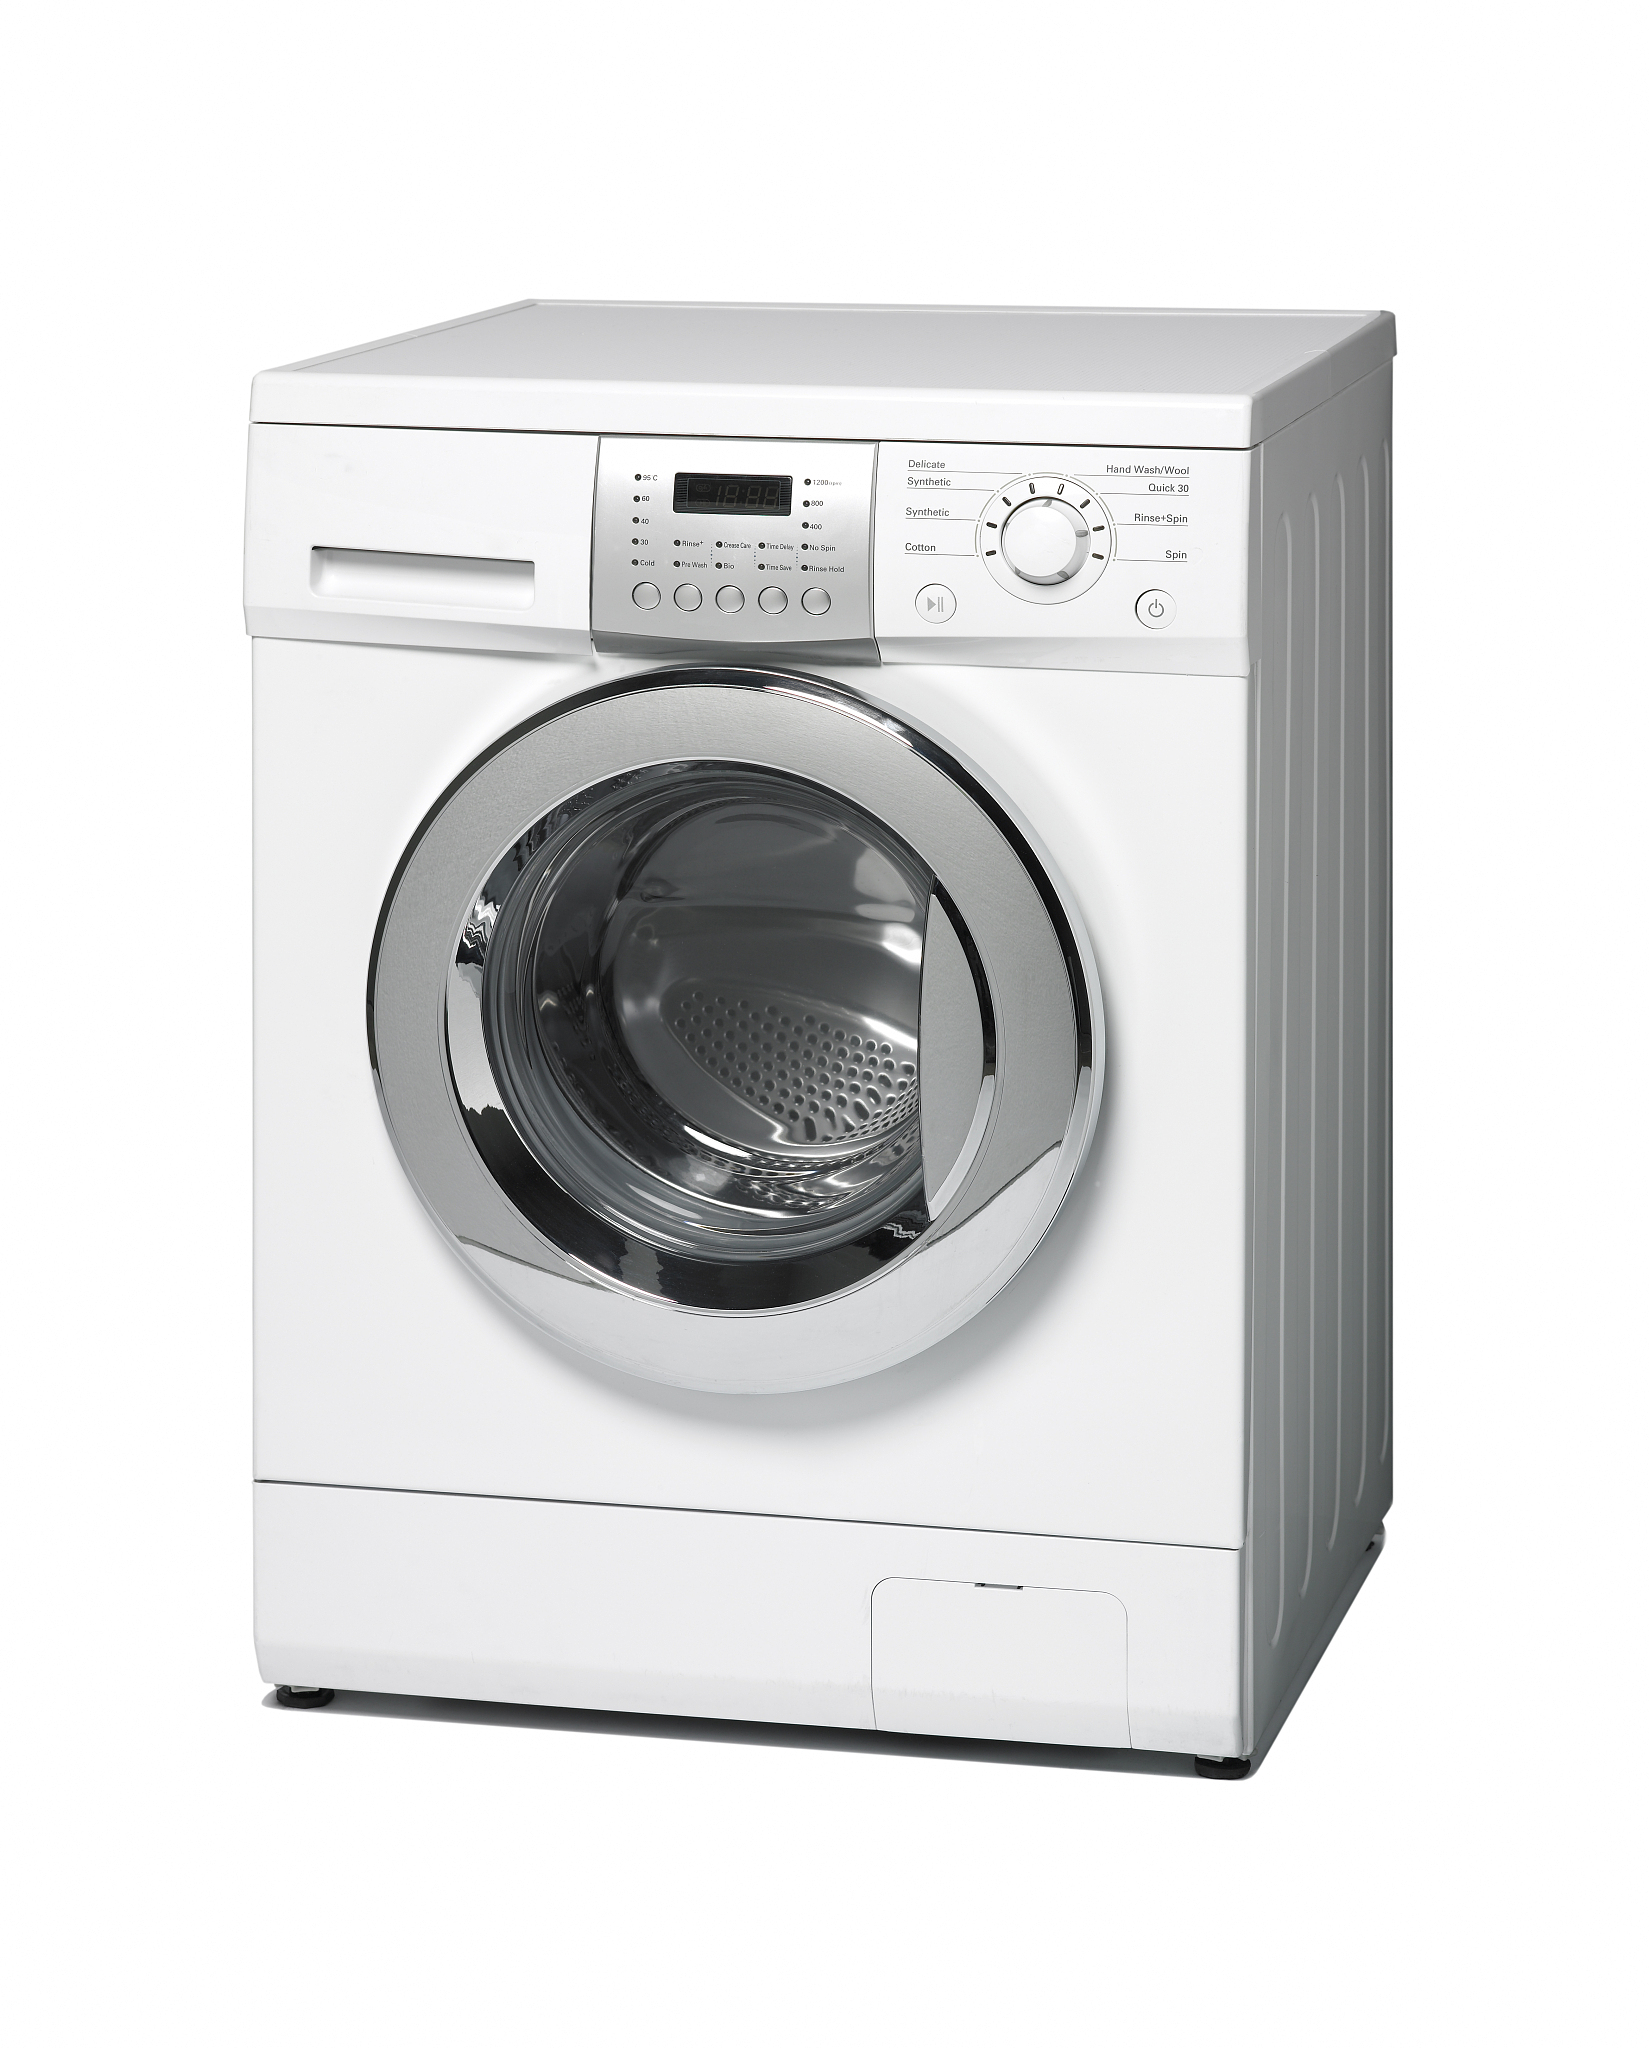 洗衣机选购:直驱与bldc,哪个更适合您?